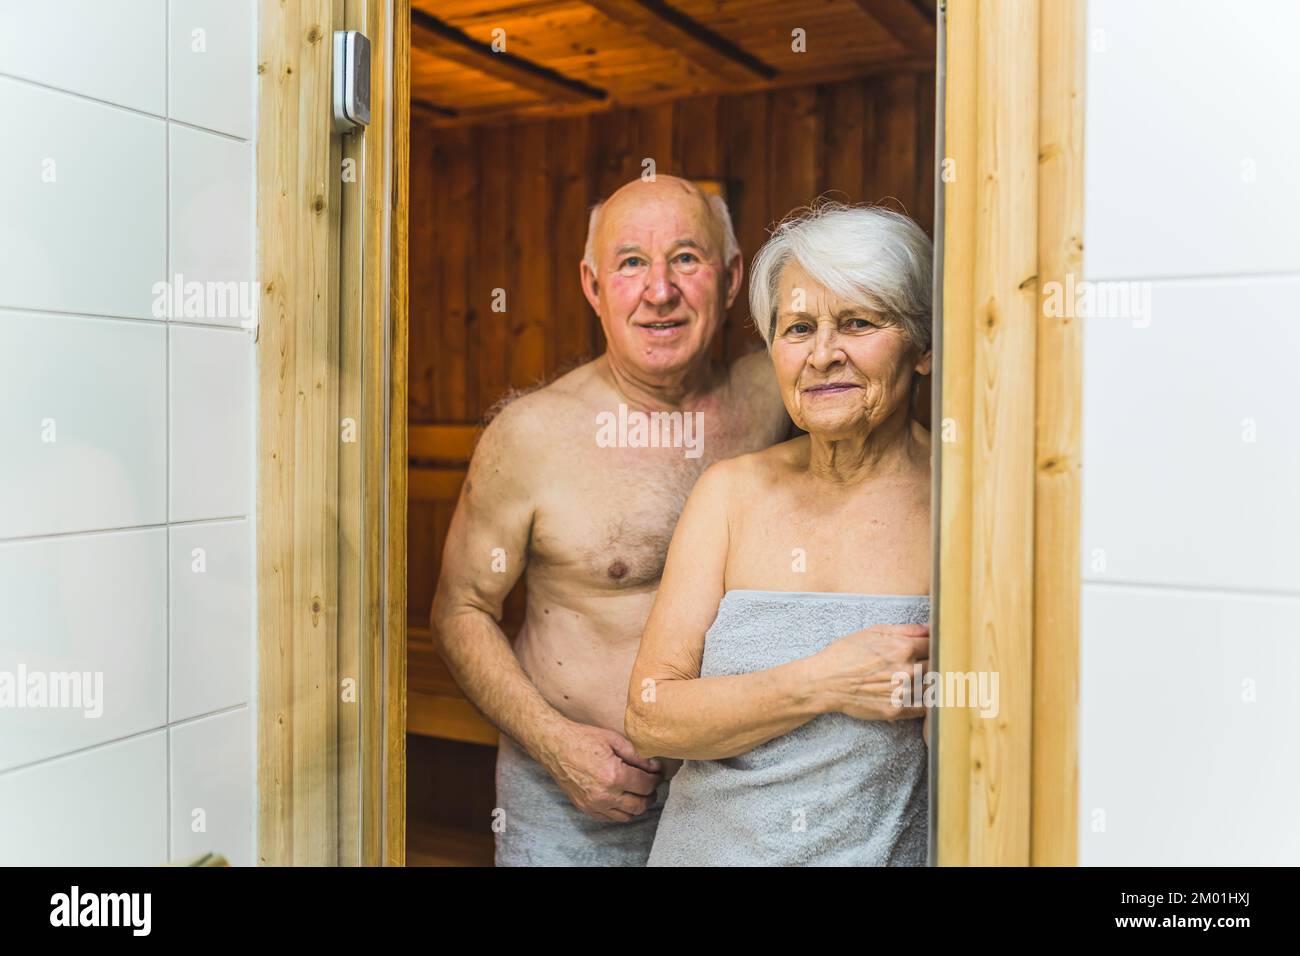 Primer plano medio en interiores de una pareja de adultos mayores caucásicos que se encuentran juntos en la entrada de la sauna de madera y miran a la cámara. . Fotografía de alta calidad Foto de stock